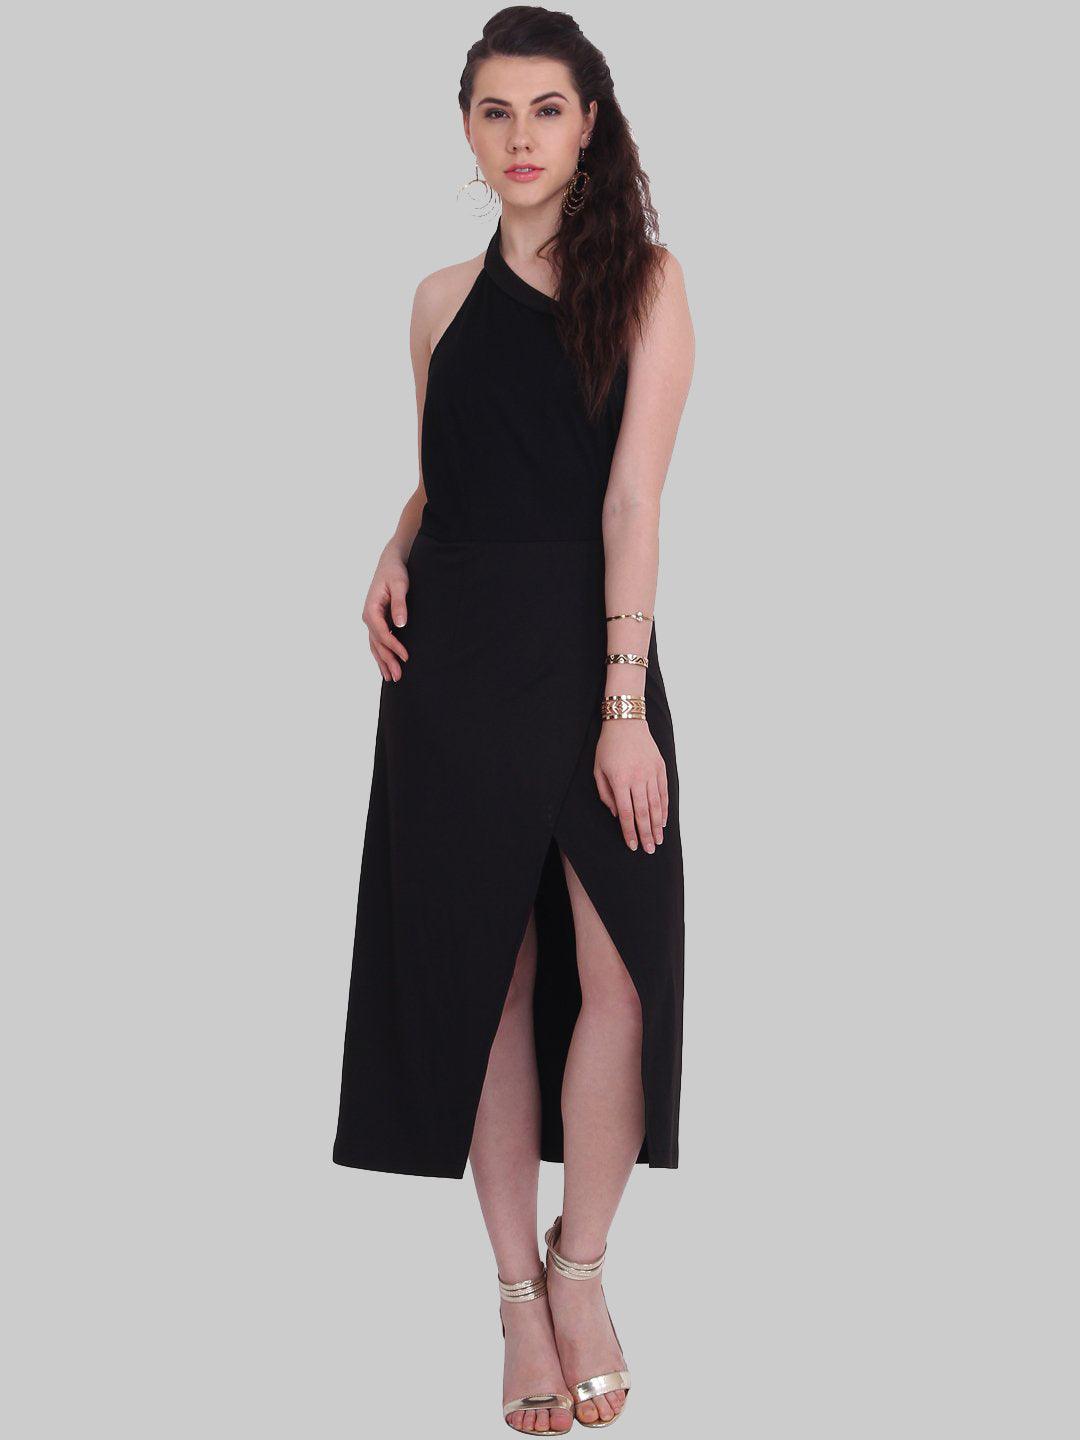 Black Sleeveless Dress - Znxclothing